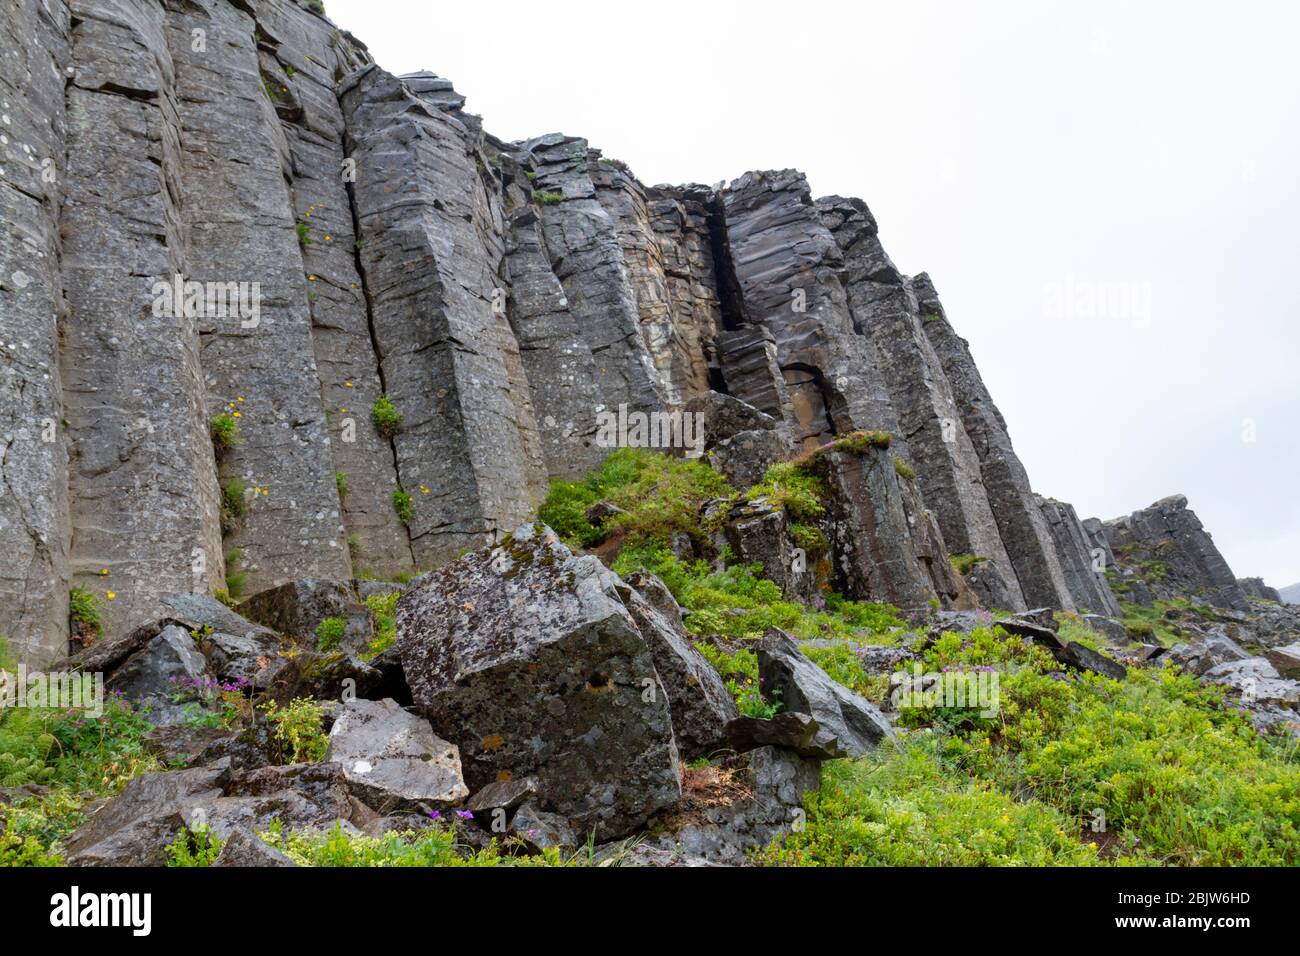 Le scogliere di Gerðuberg (Gerduberg) sono una rupe di dolerite, una roccia basaltica a grana grossa, situata sulla penisola occidentale di Snæfellsnes, in Islanda. Foto Stock